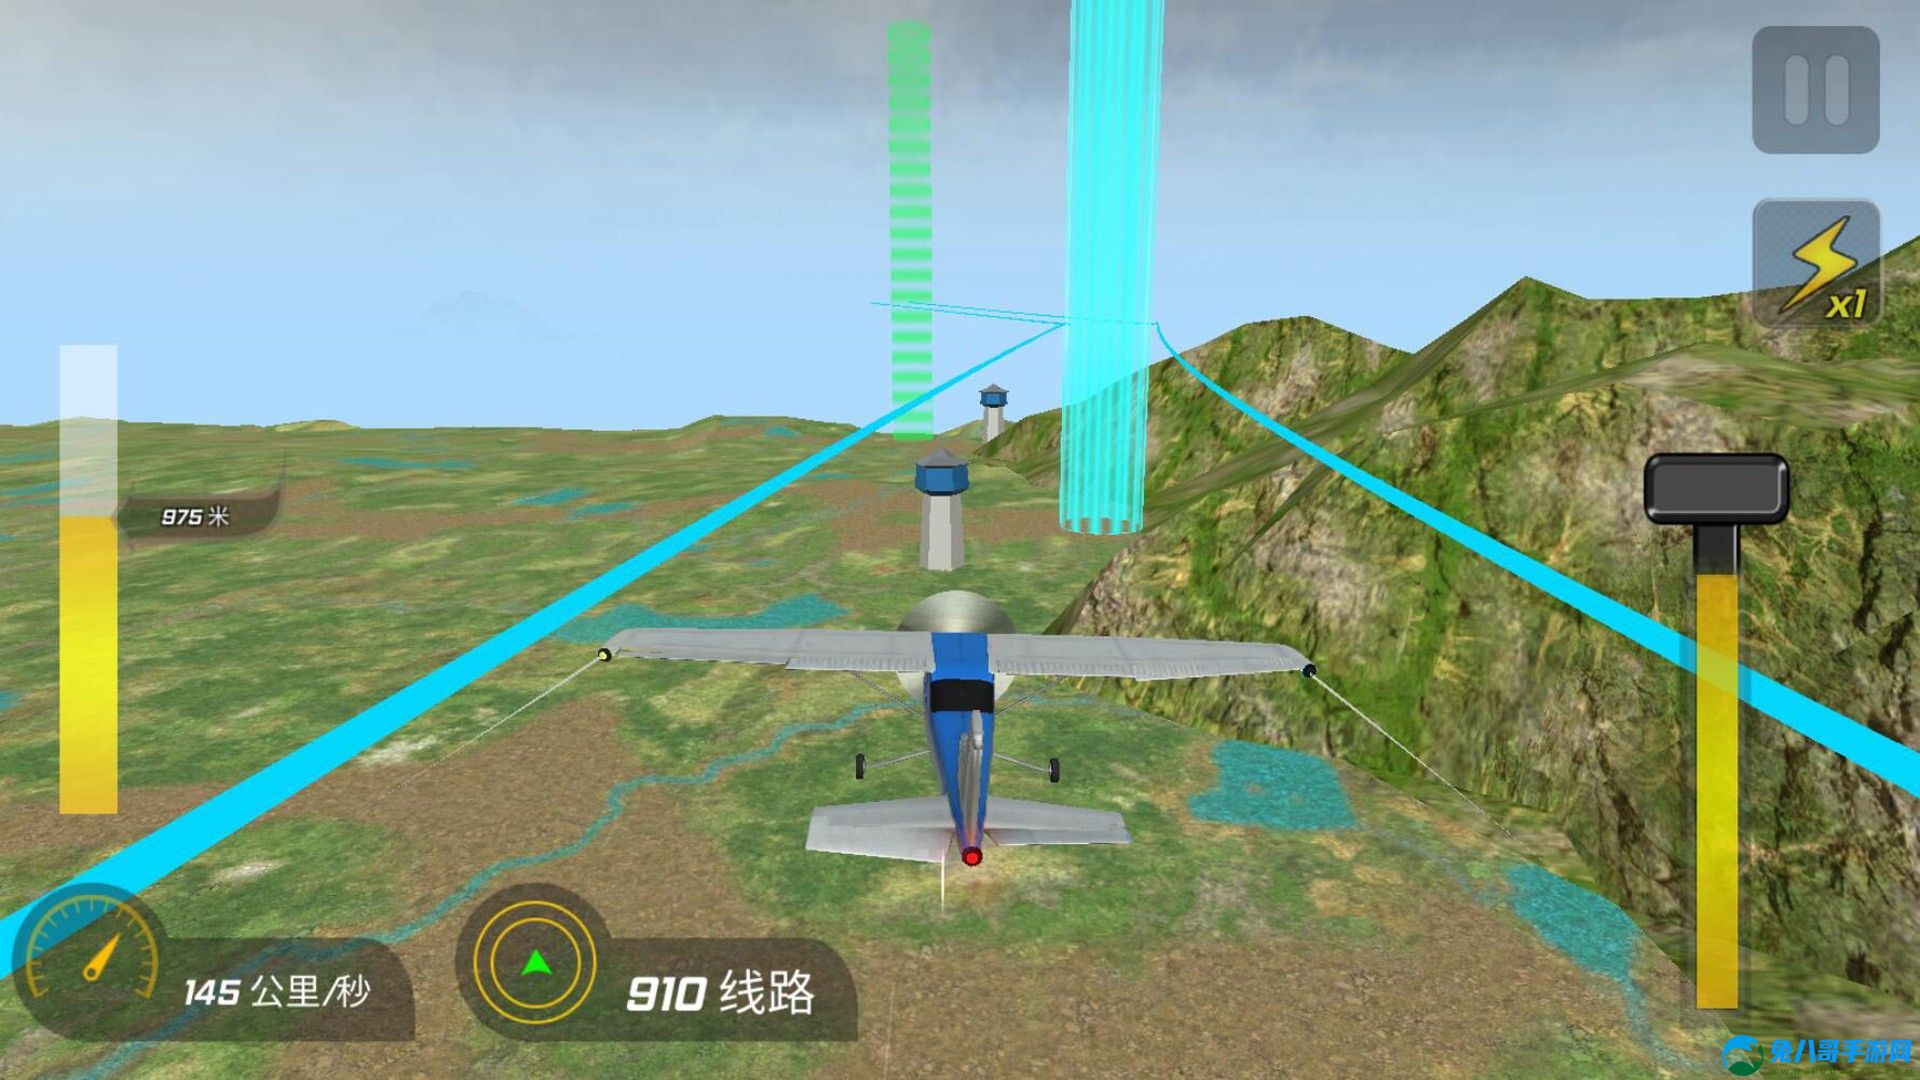 高空飞机模拟游戏安卓版 v300.1.0.3018